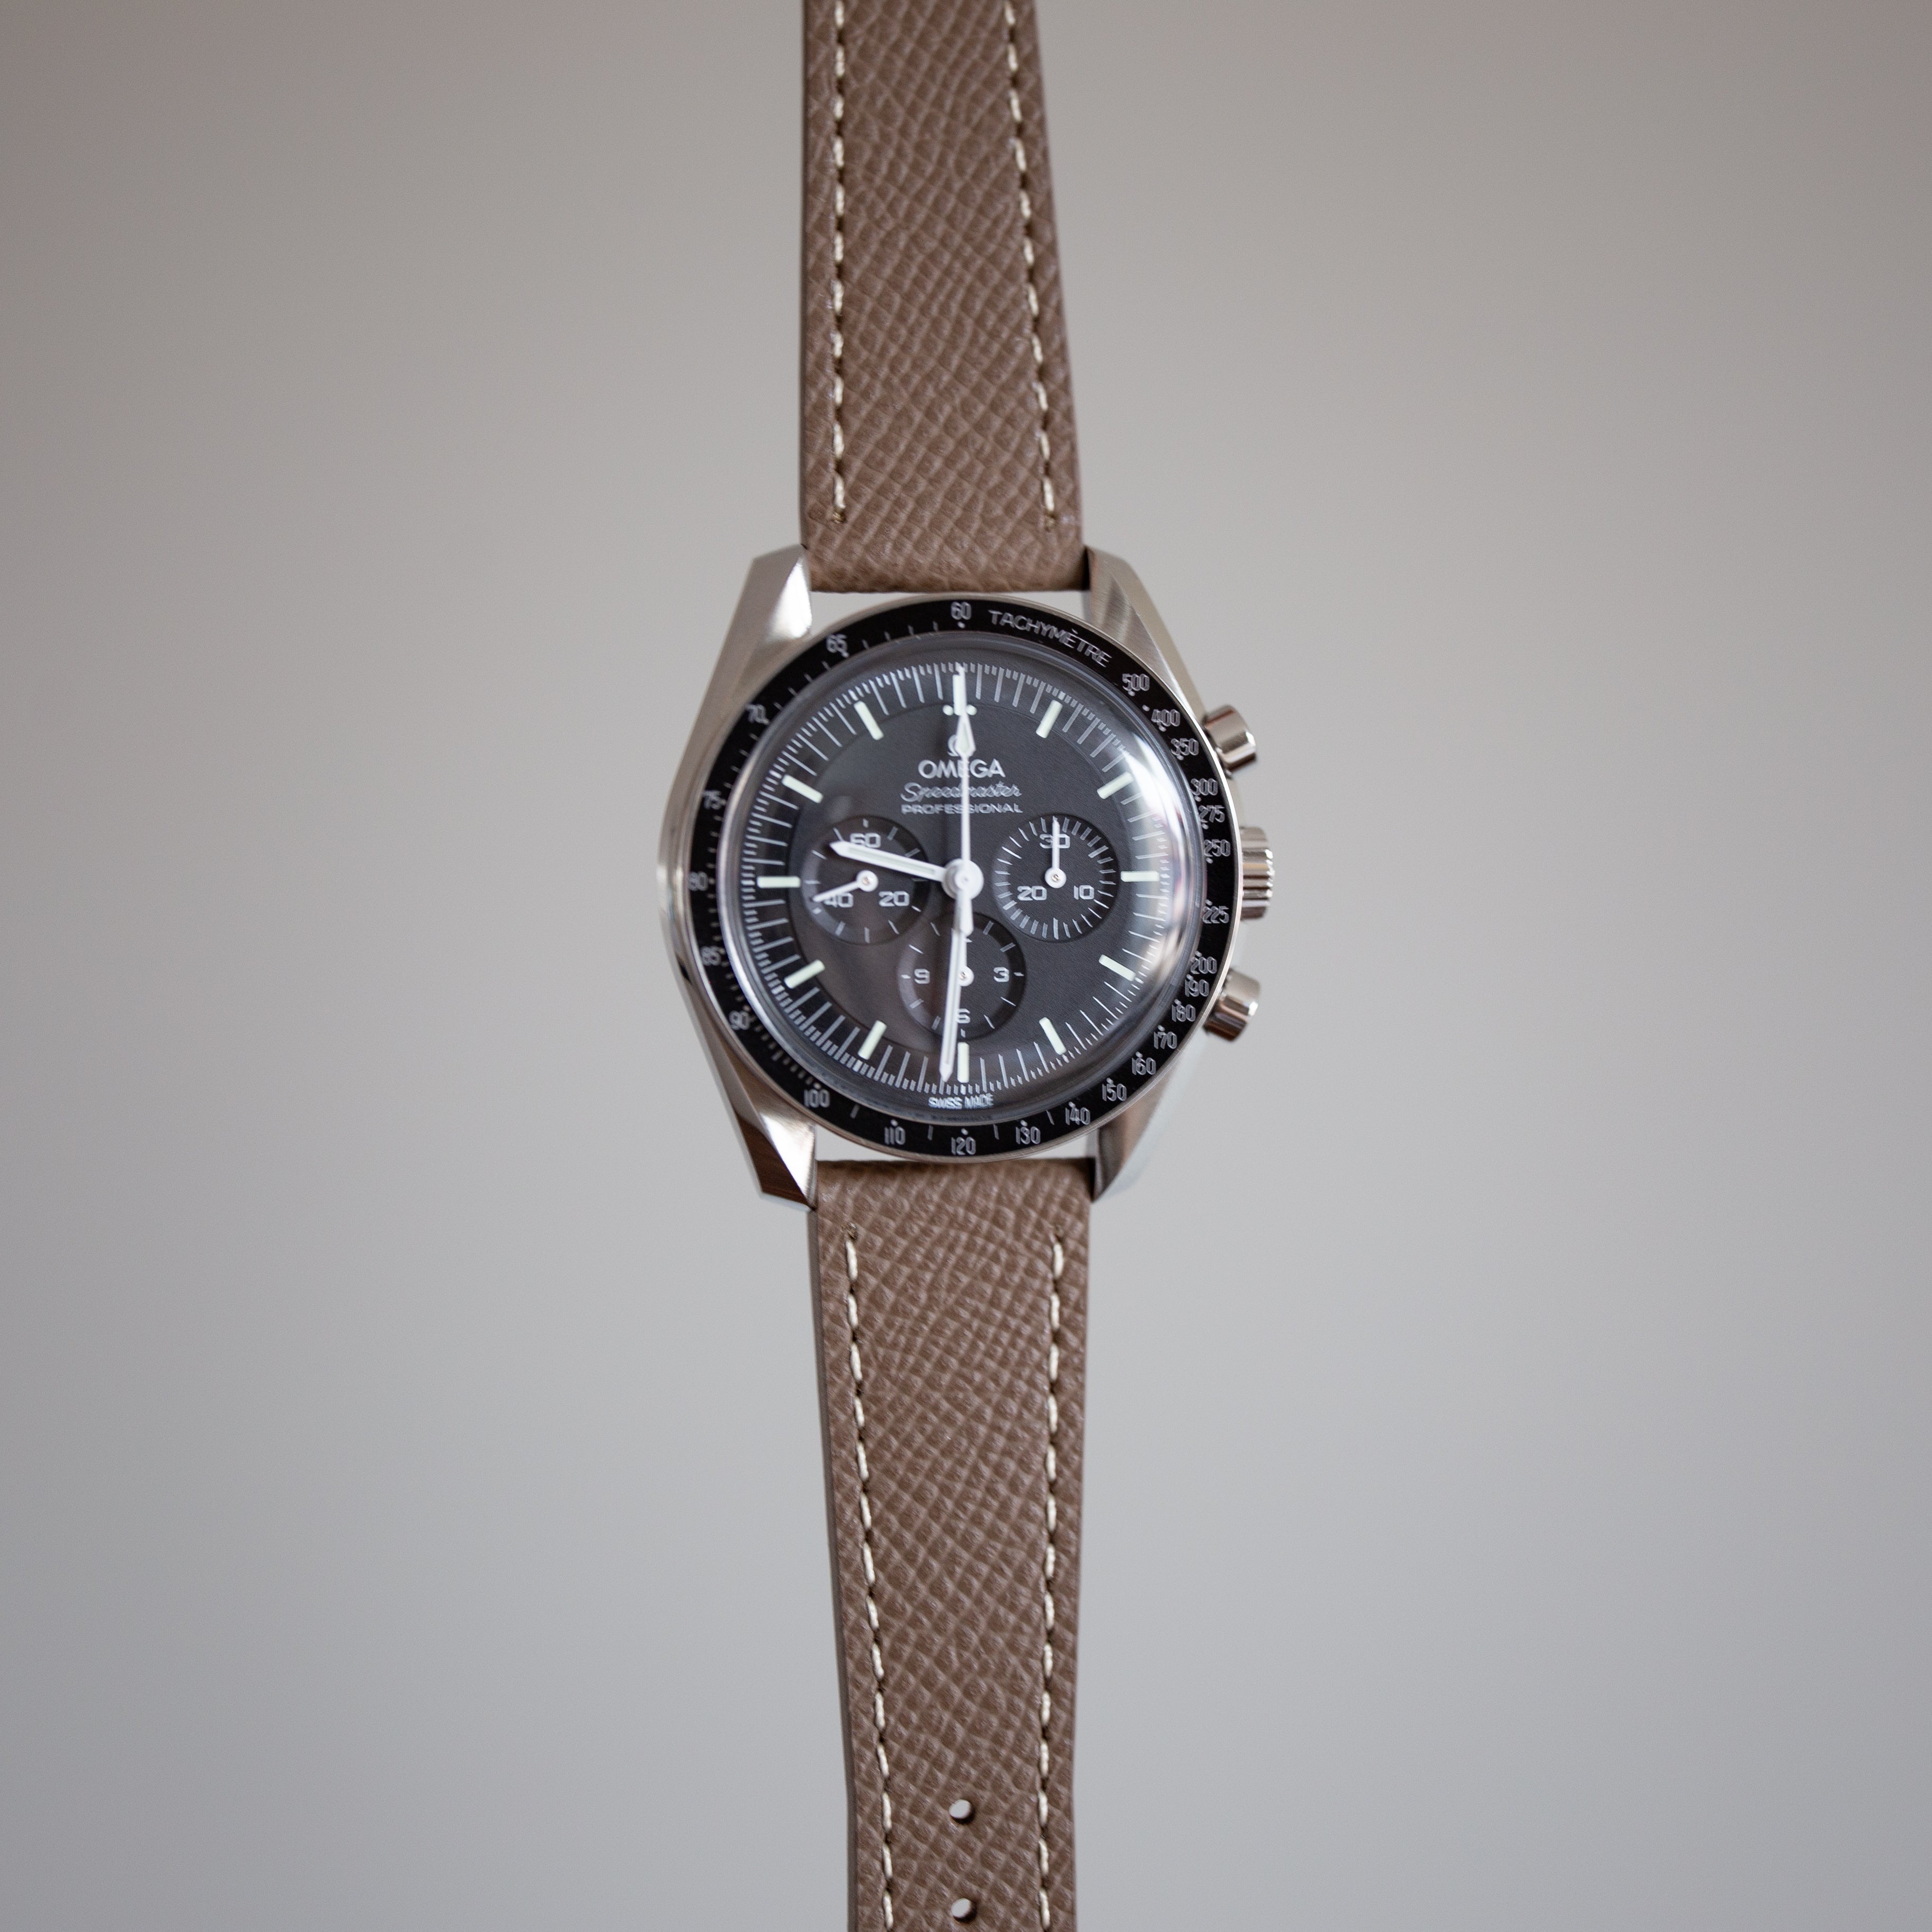 Speedmaster Leather Watch Strap Brown